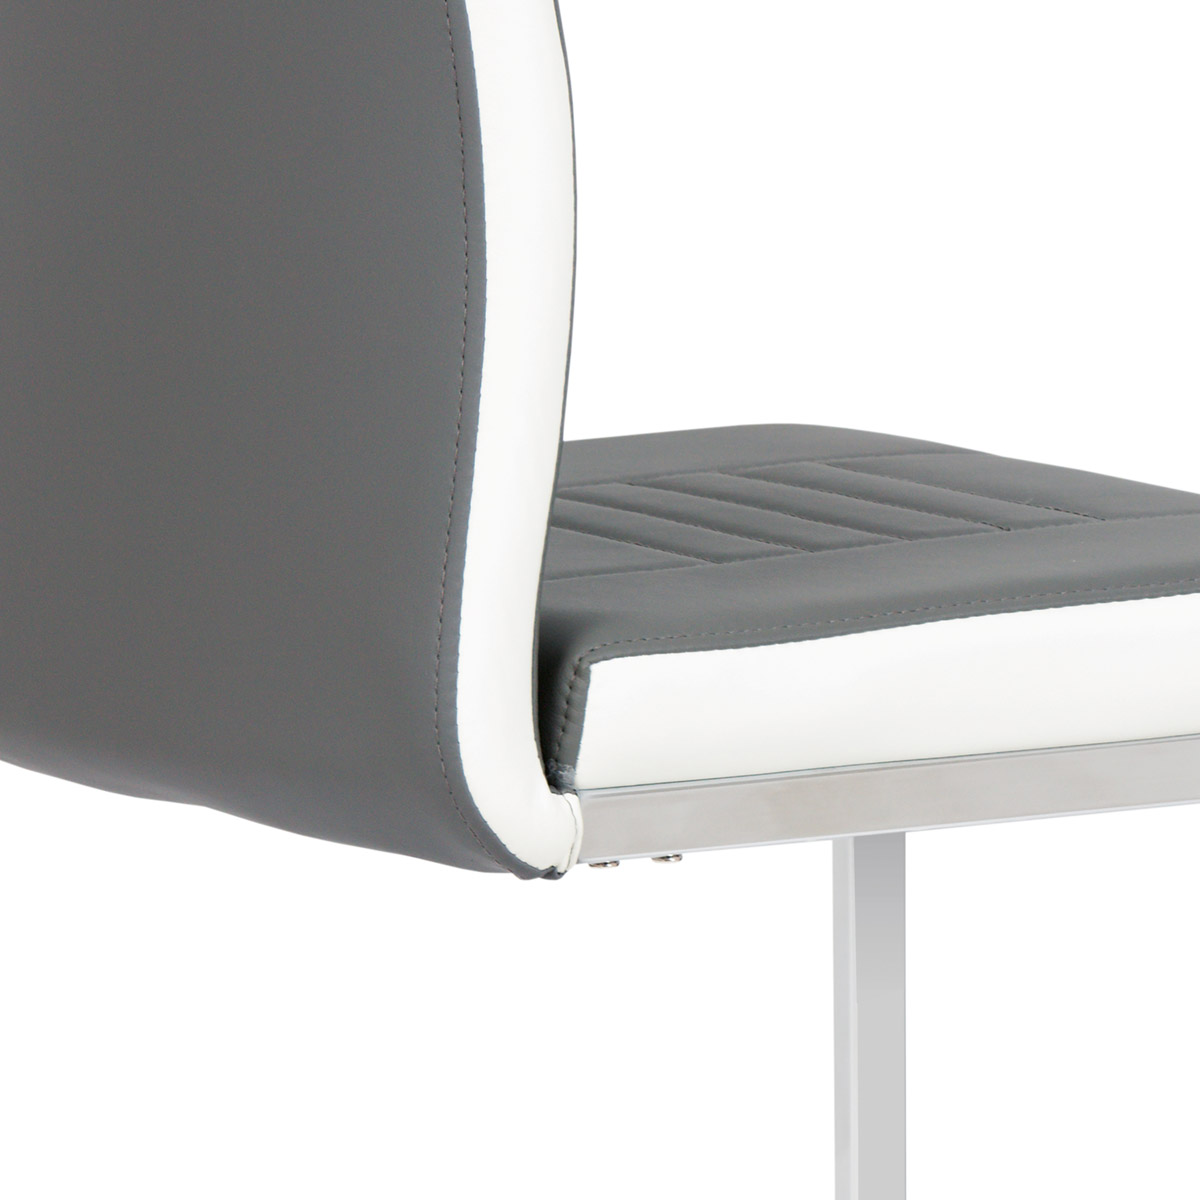 Jídelní židle chrom / koženka šedá s bílými boky